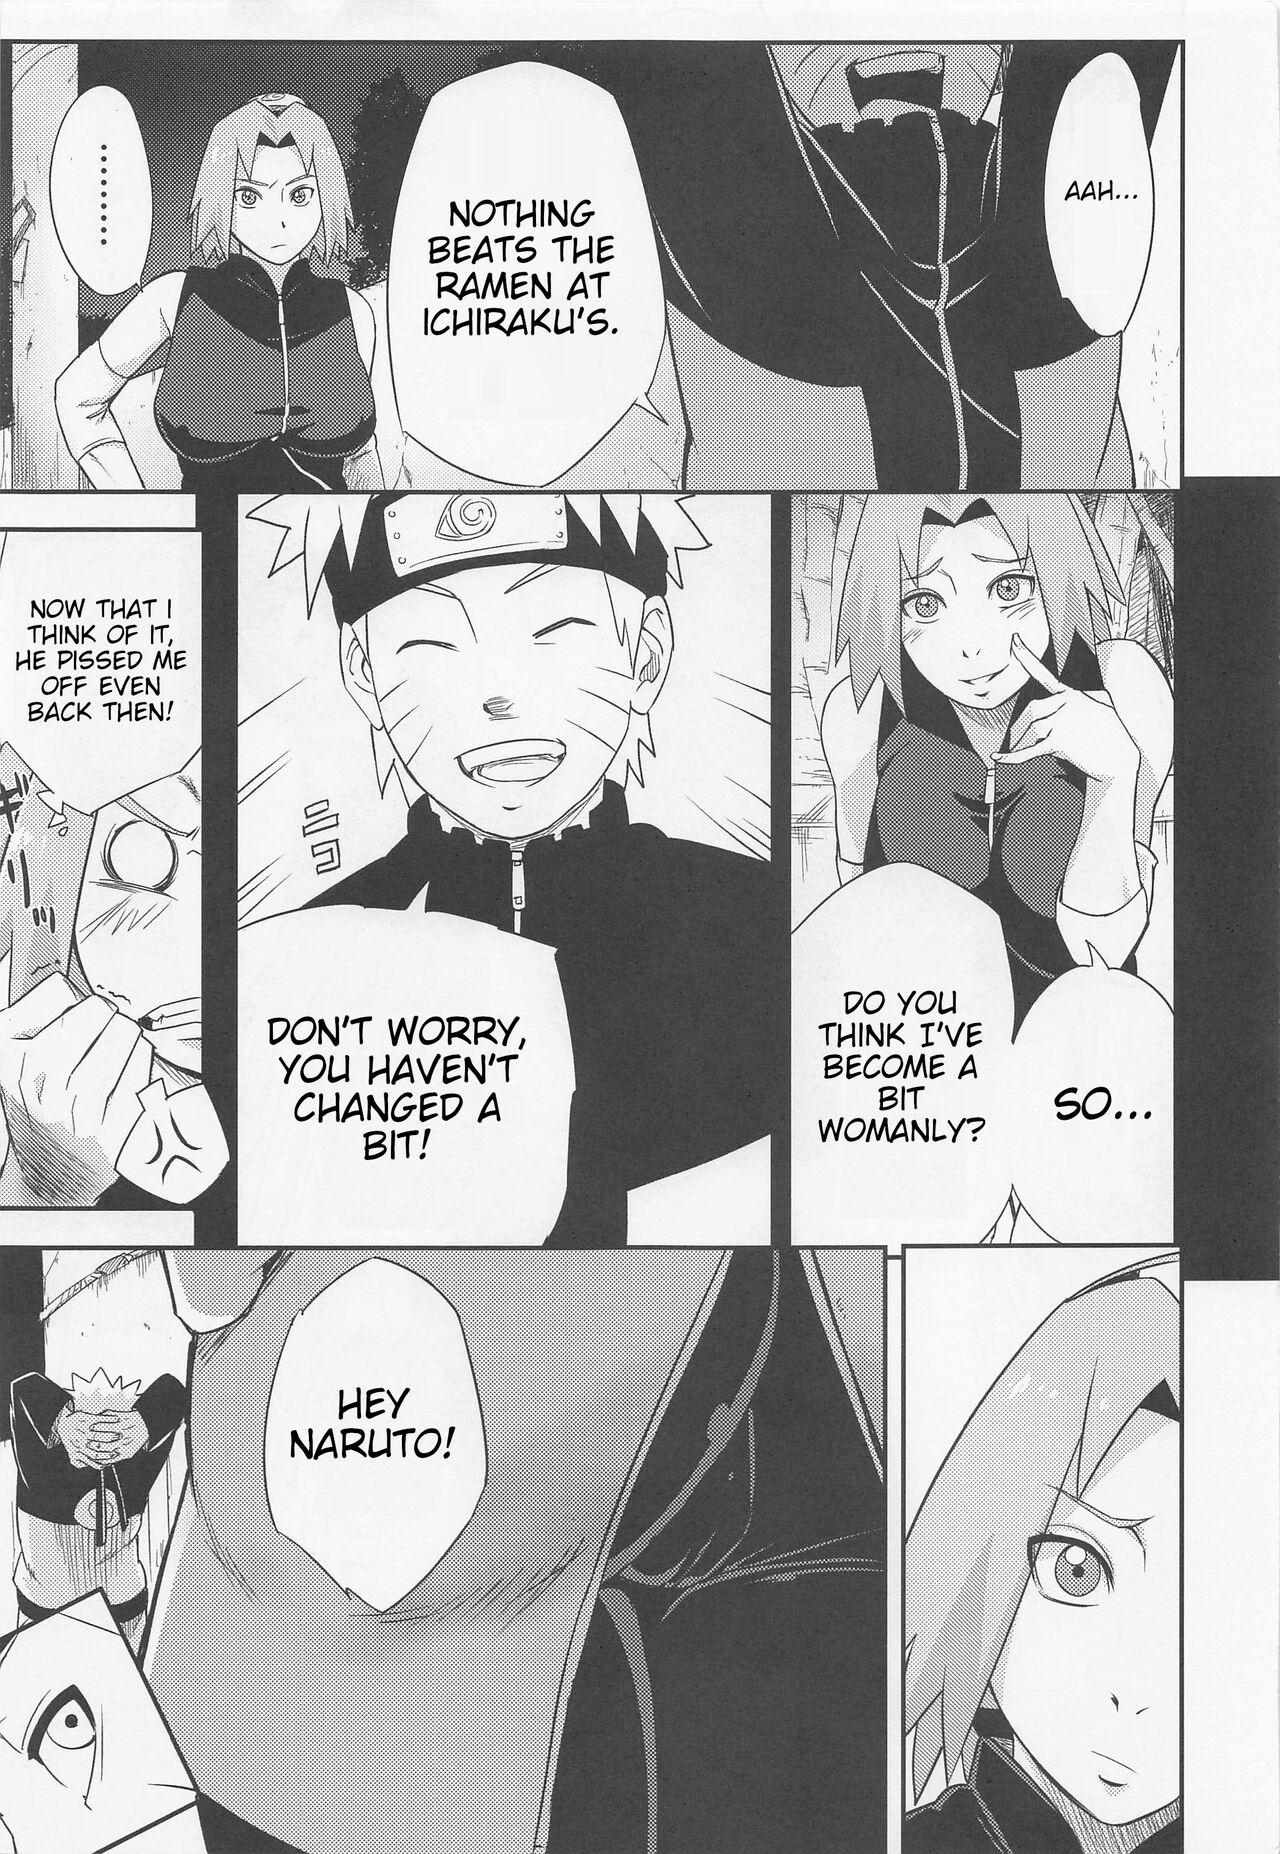 Twinkstudios Hyakugo no Jutsu - Naruto Highheels - Page 4